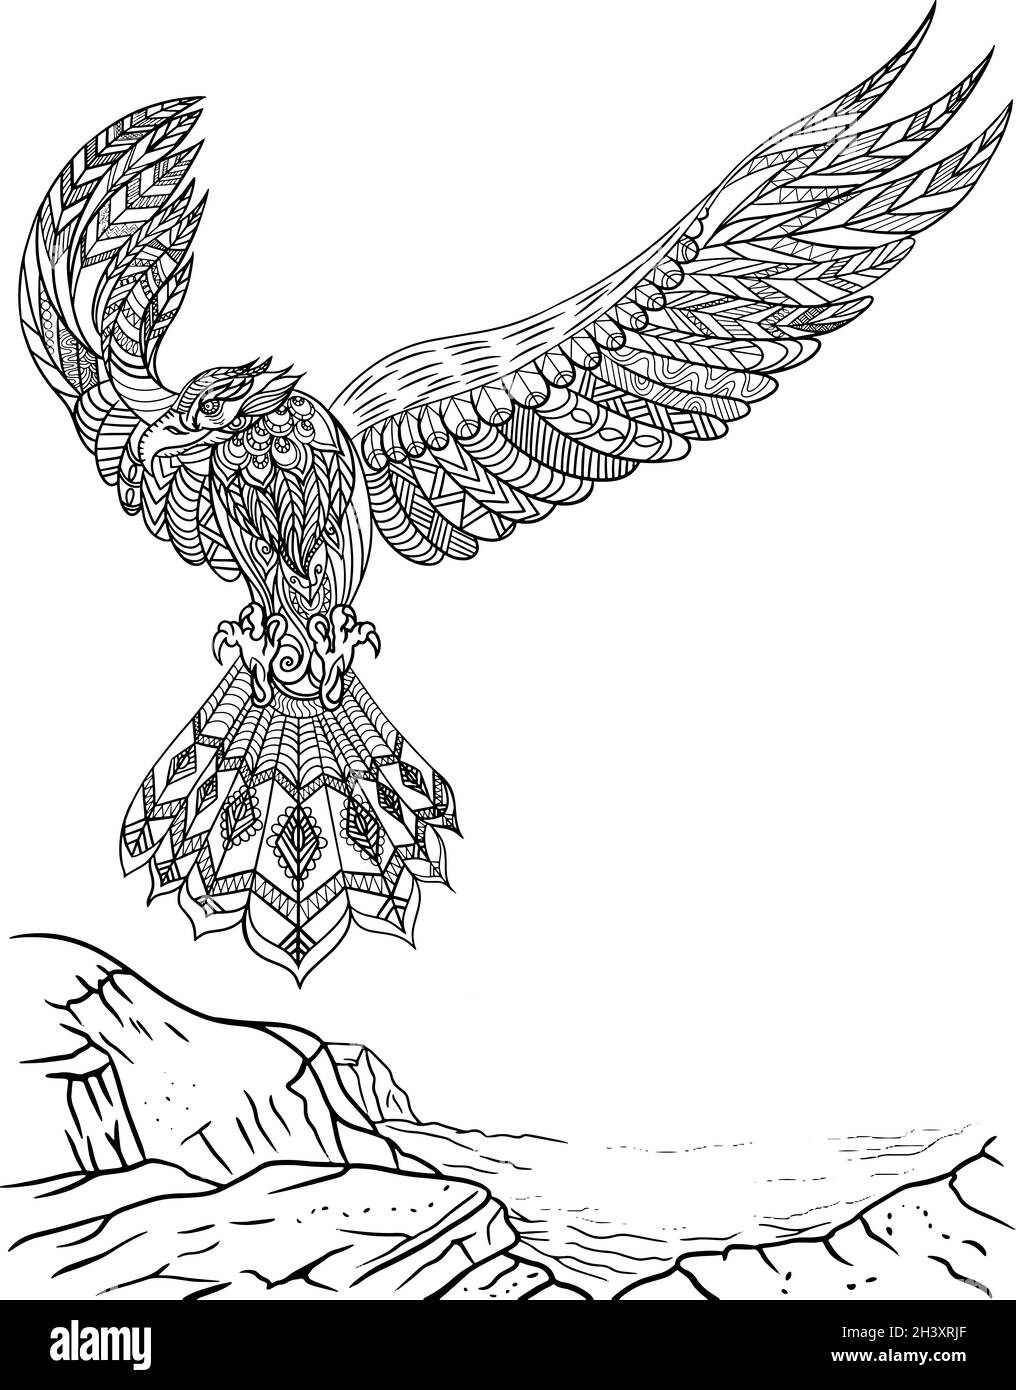 Falcon mit Wings Wide Open, die von Einer Klippe fliegen, mit Blick nach vorne. Farblose Linienzeichnung. Schöne Adler Verbreiten Feder Färbung Stockfoto